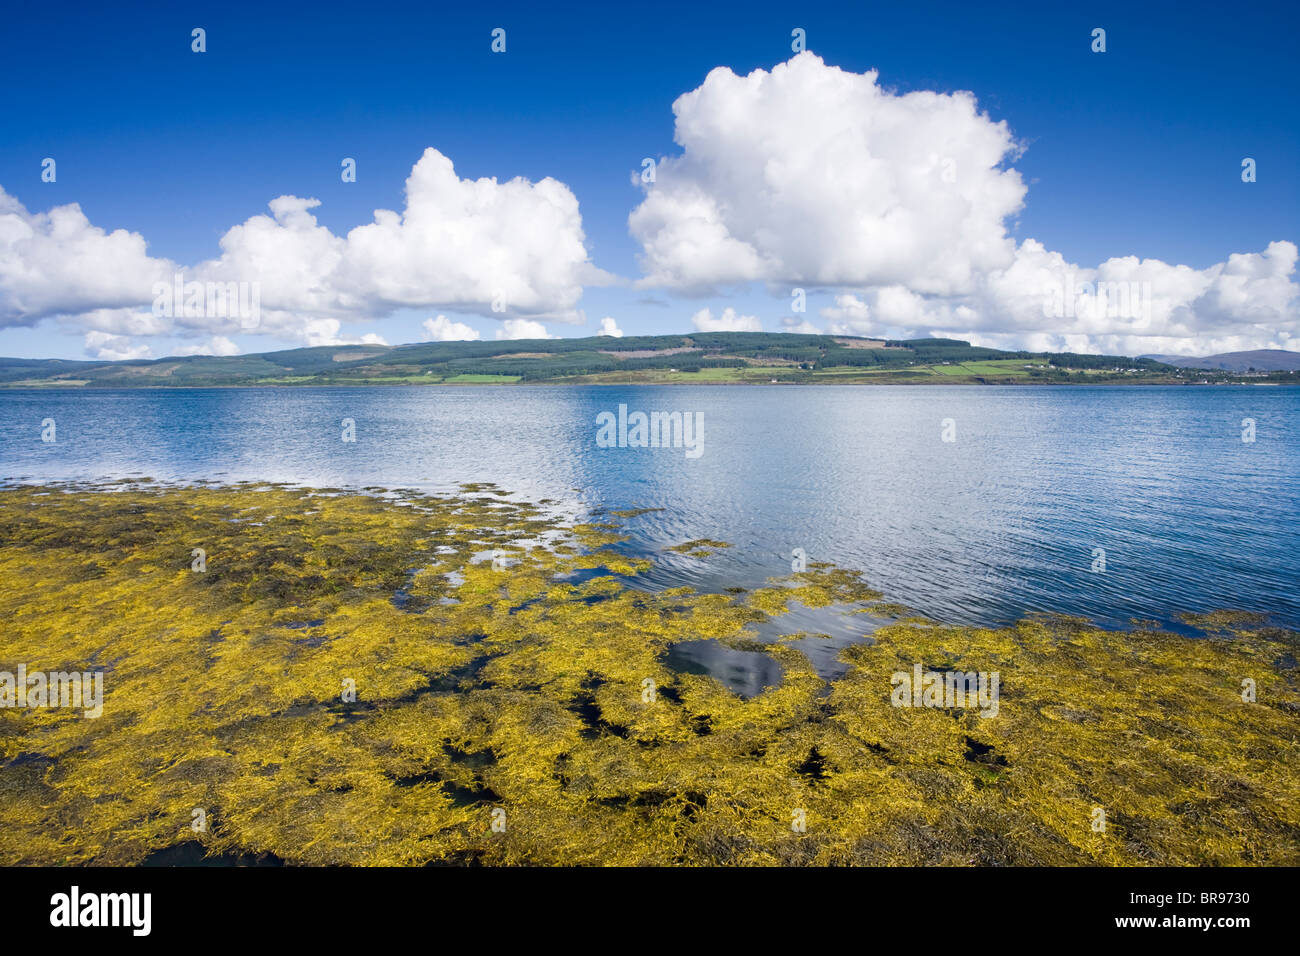 View from Isle of Mull at Fishnish towards Lochaline, Scotland, UK Stock Photo